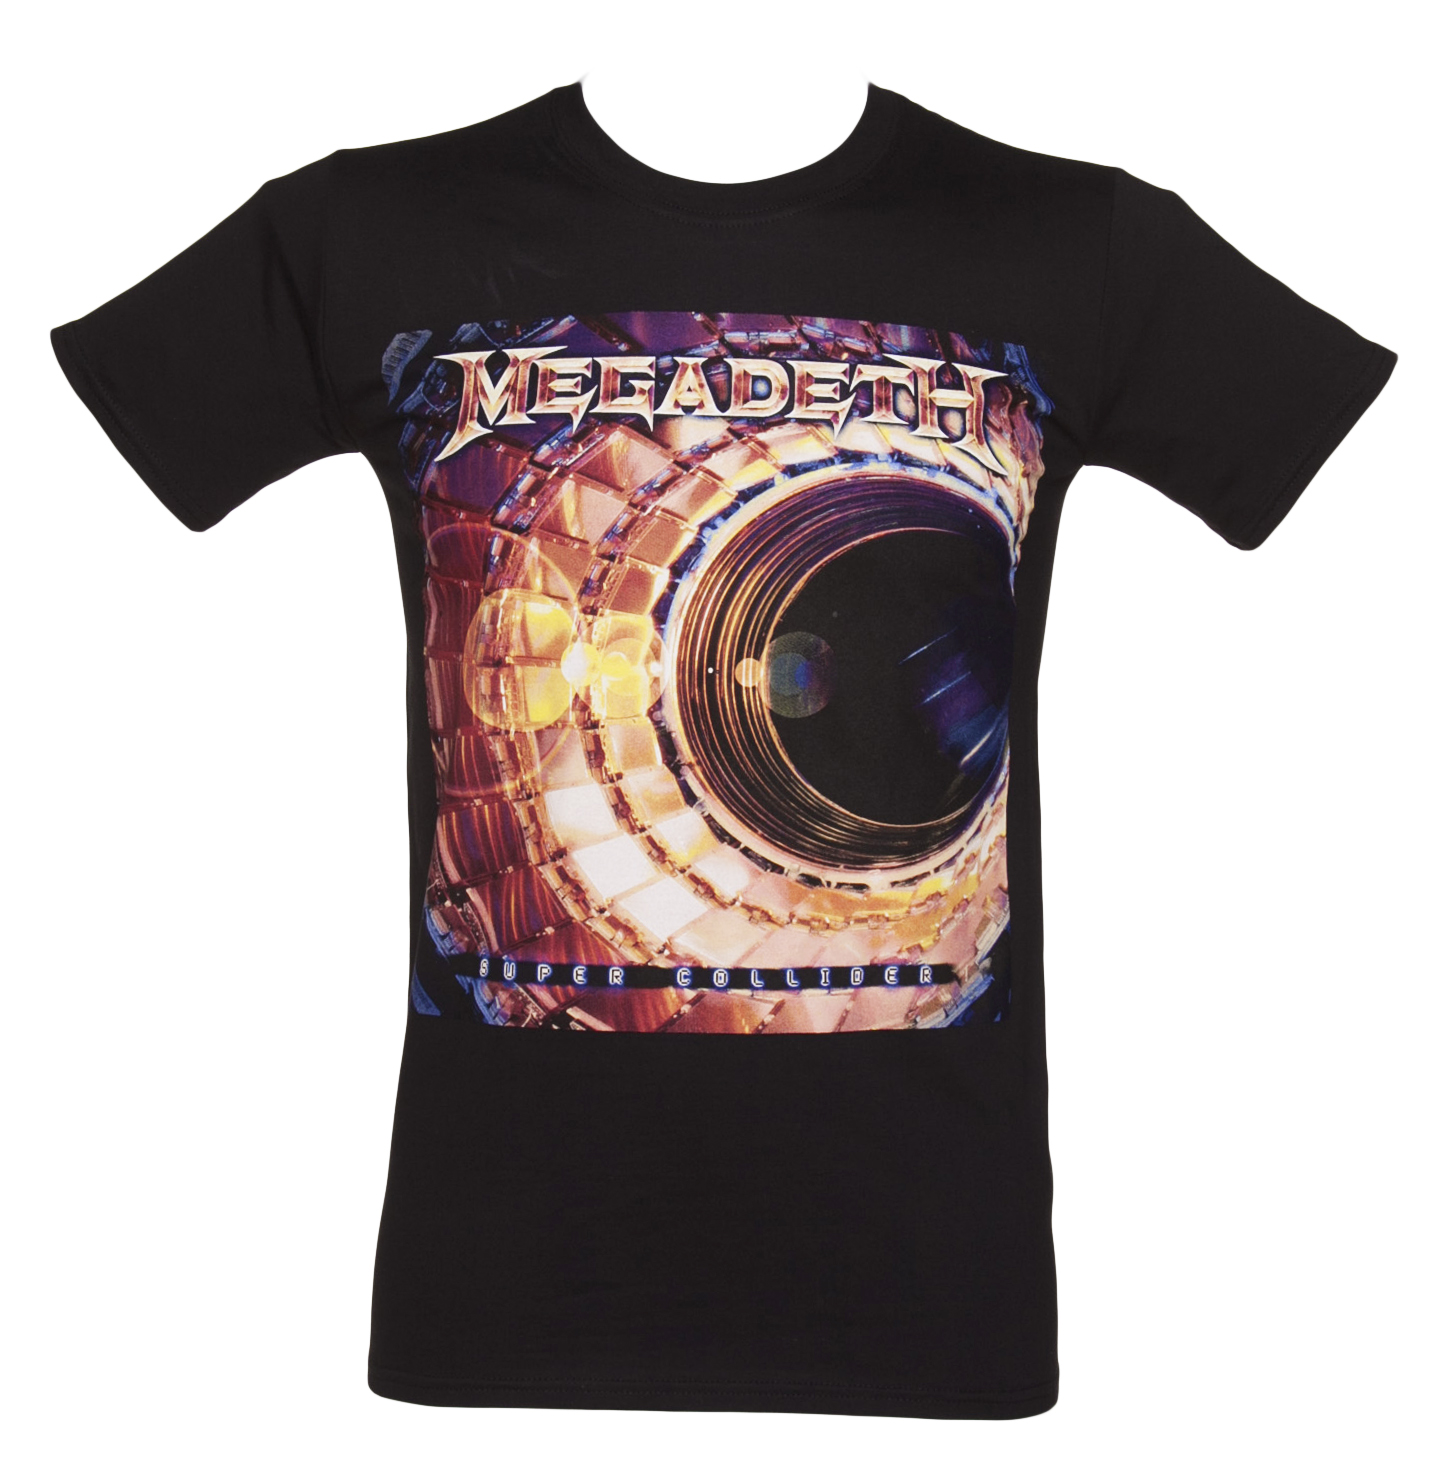 Black Super Collider Megadeth T-Shirt